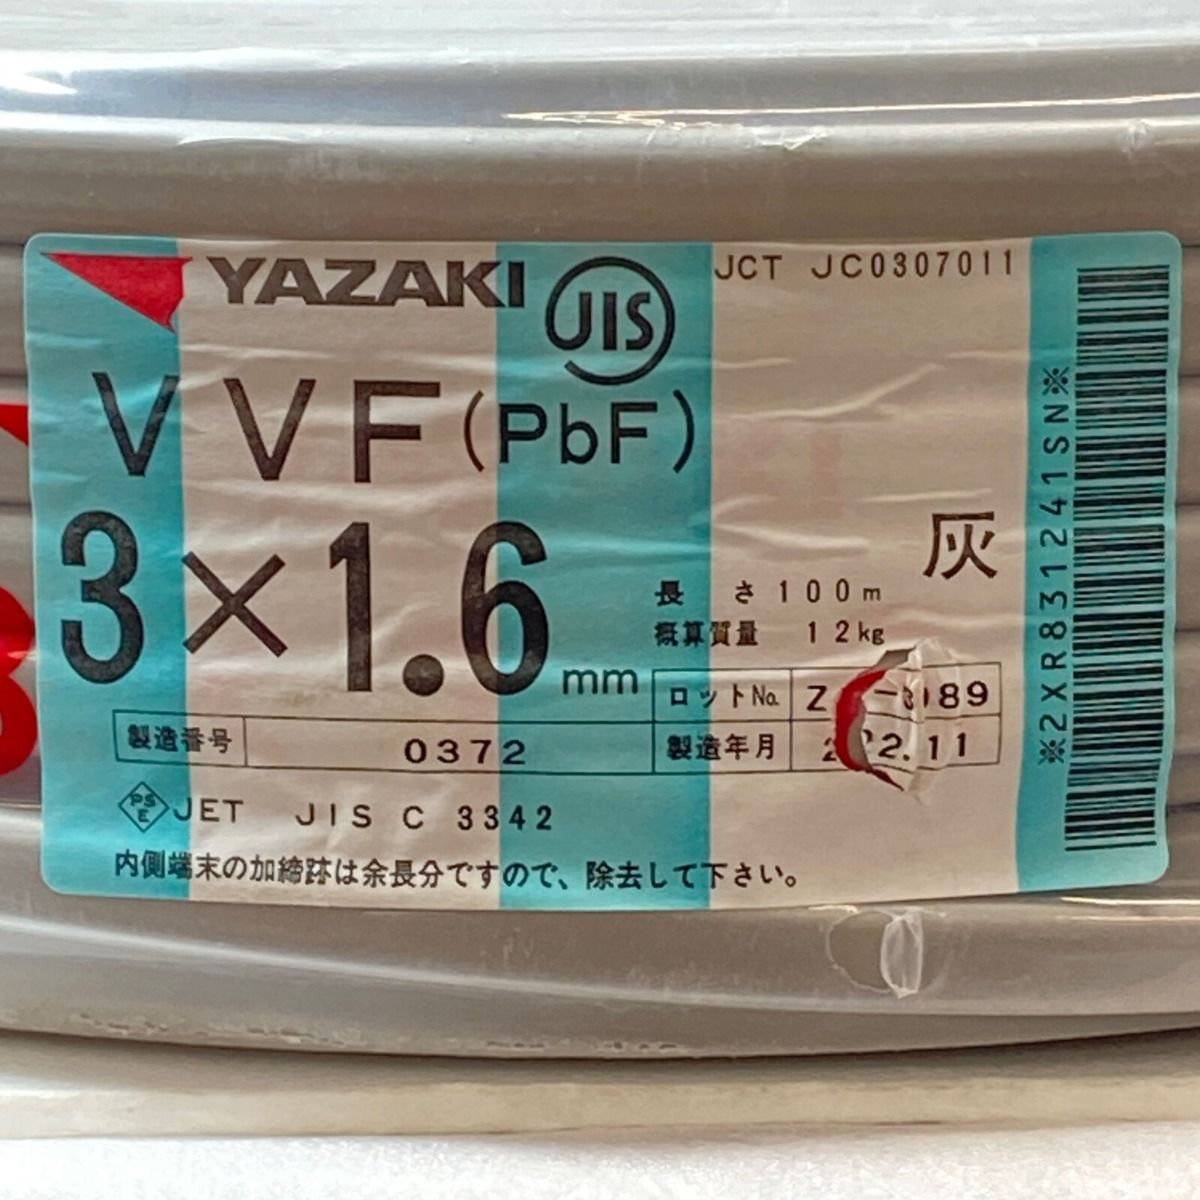 ΦΦYAZAKI VVFケーブル 平形 100m巻 灰色 VVF3×1.6 3芯 0372 - メルカリ